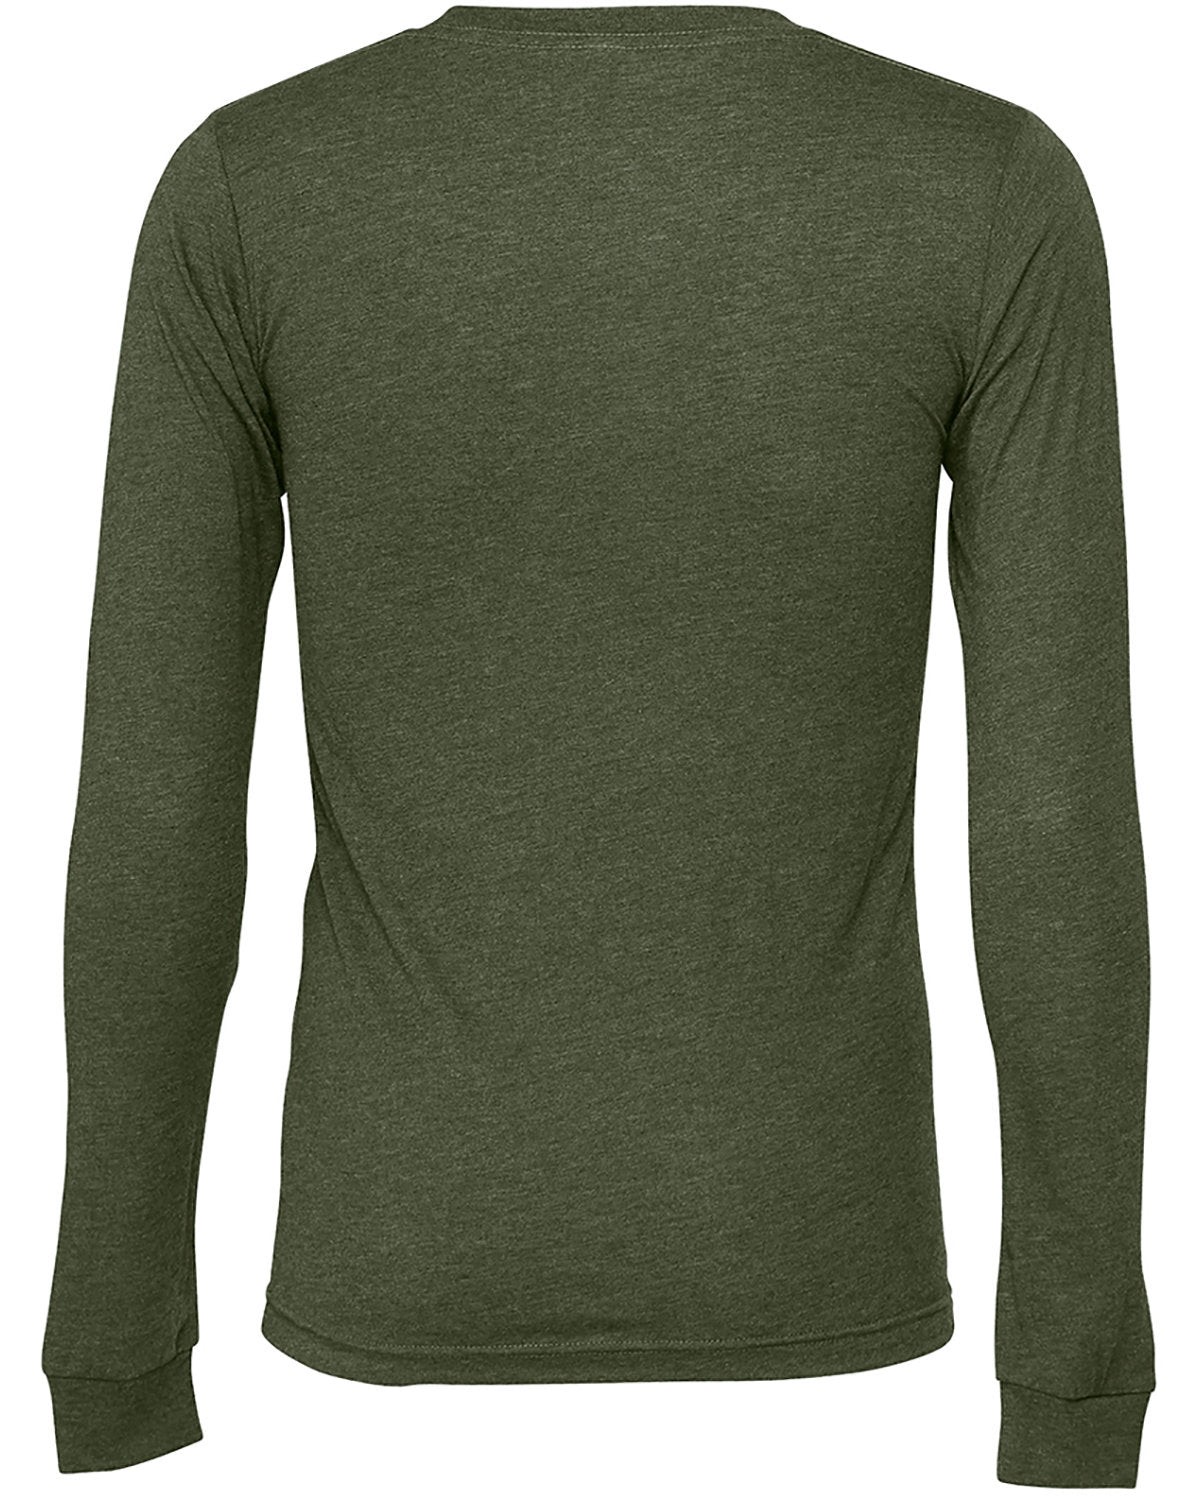 UNISEX Jersey Long Sleeve T-Shirt